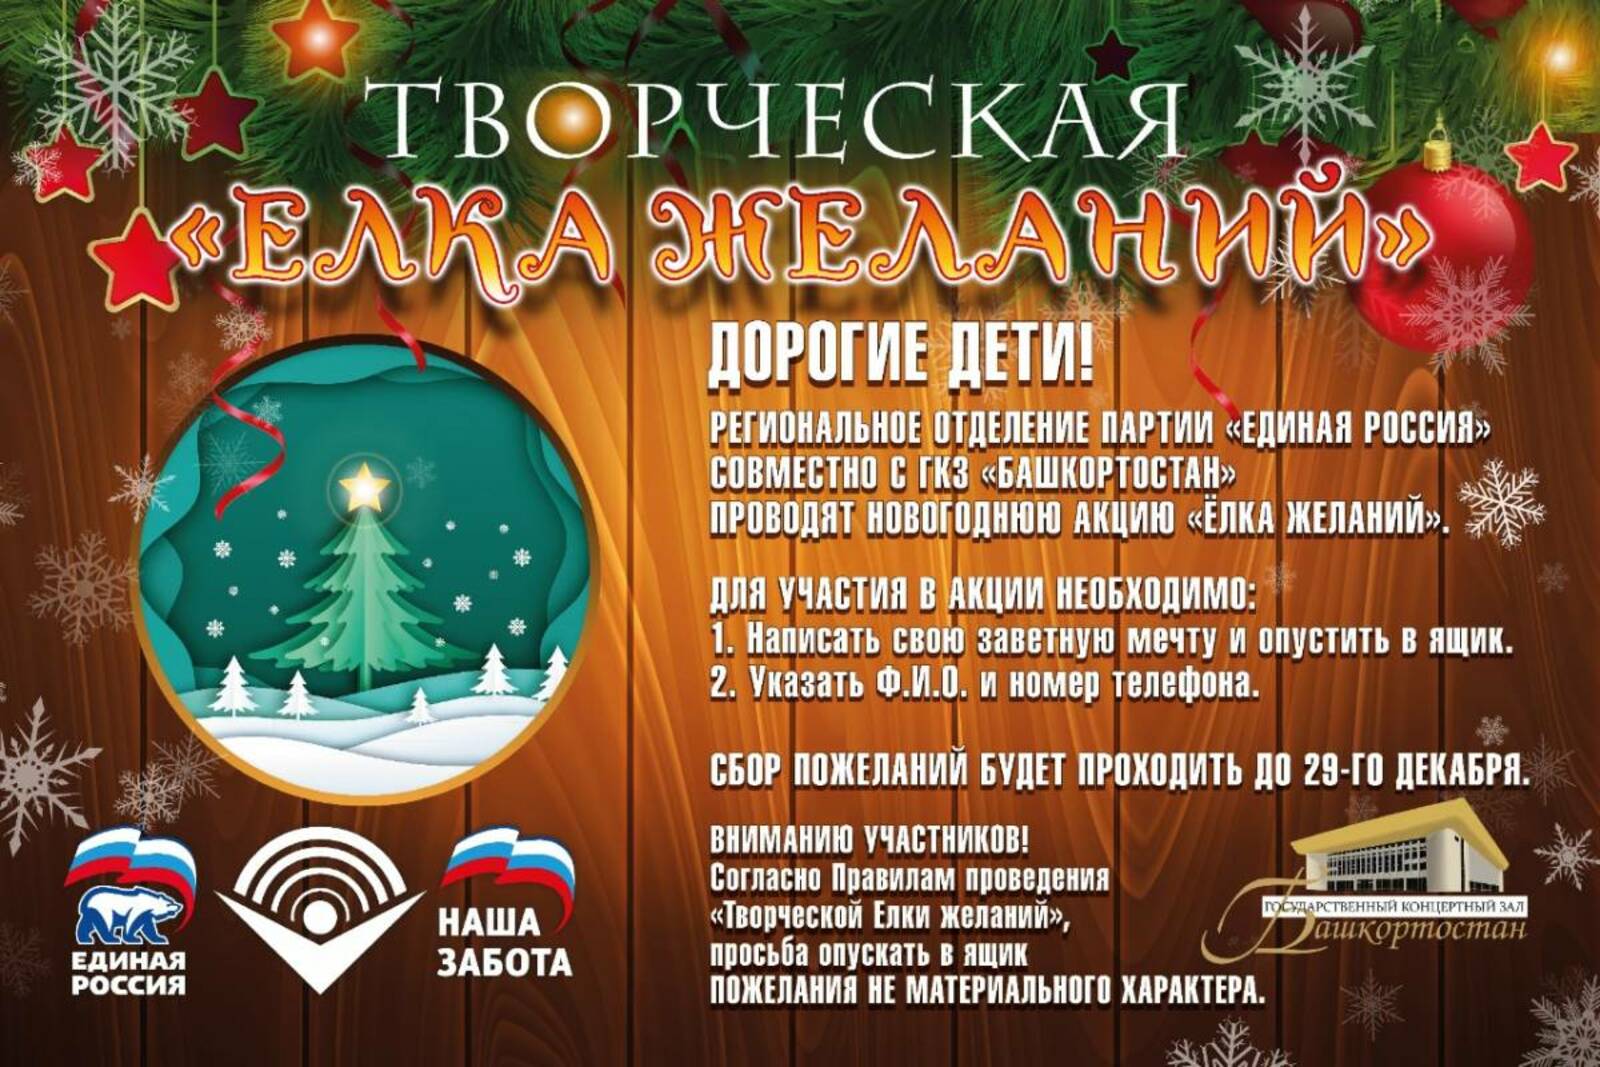 В Башкирии стартовала новогодняя акция «Творческая Ёлка желаний»